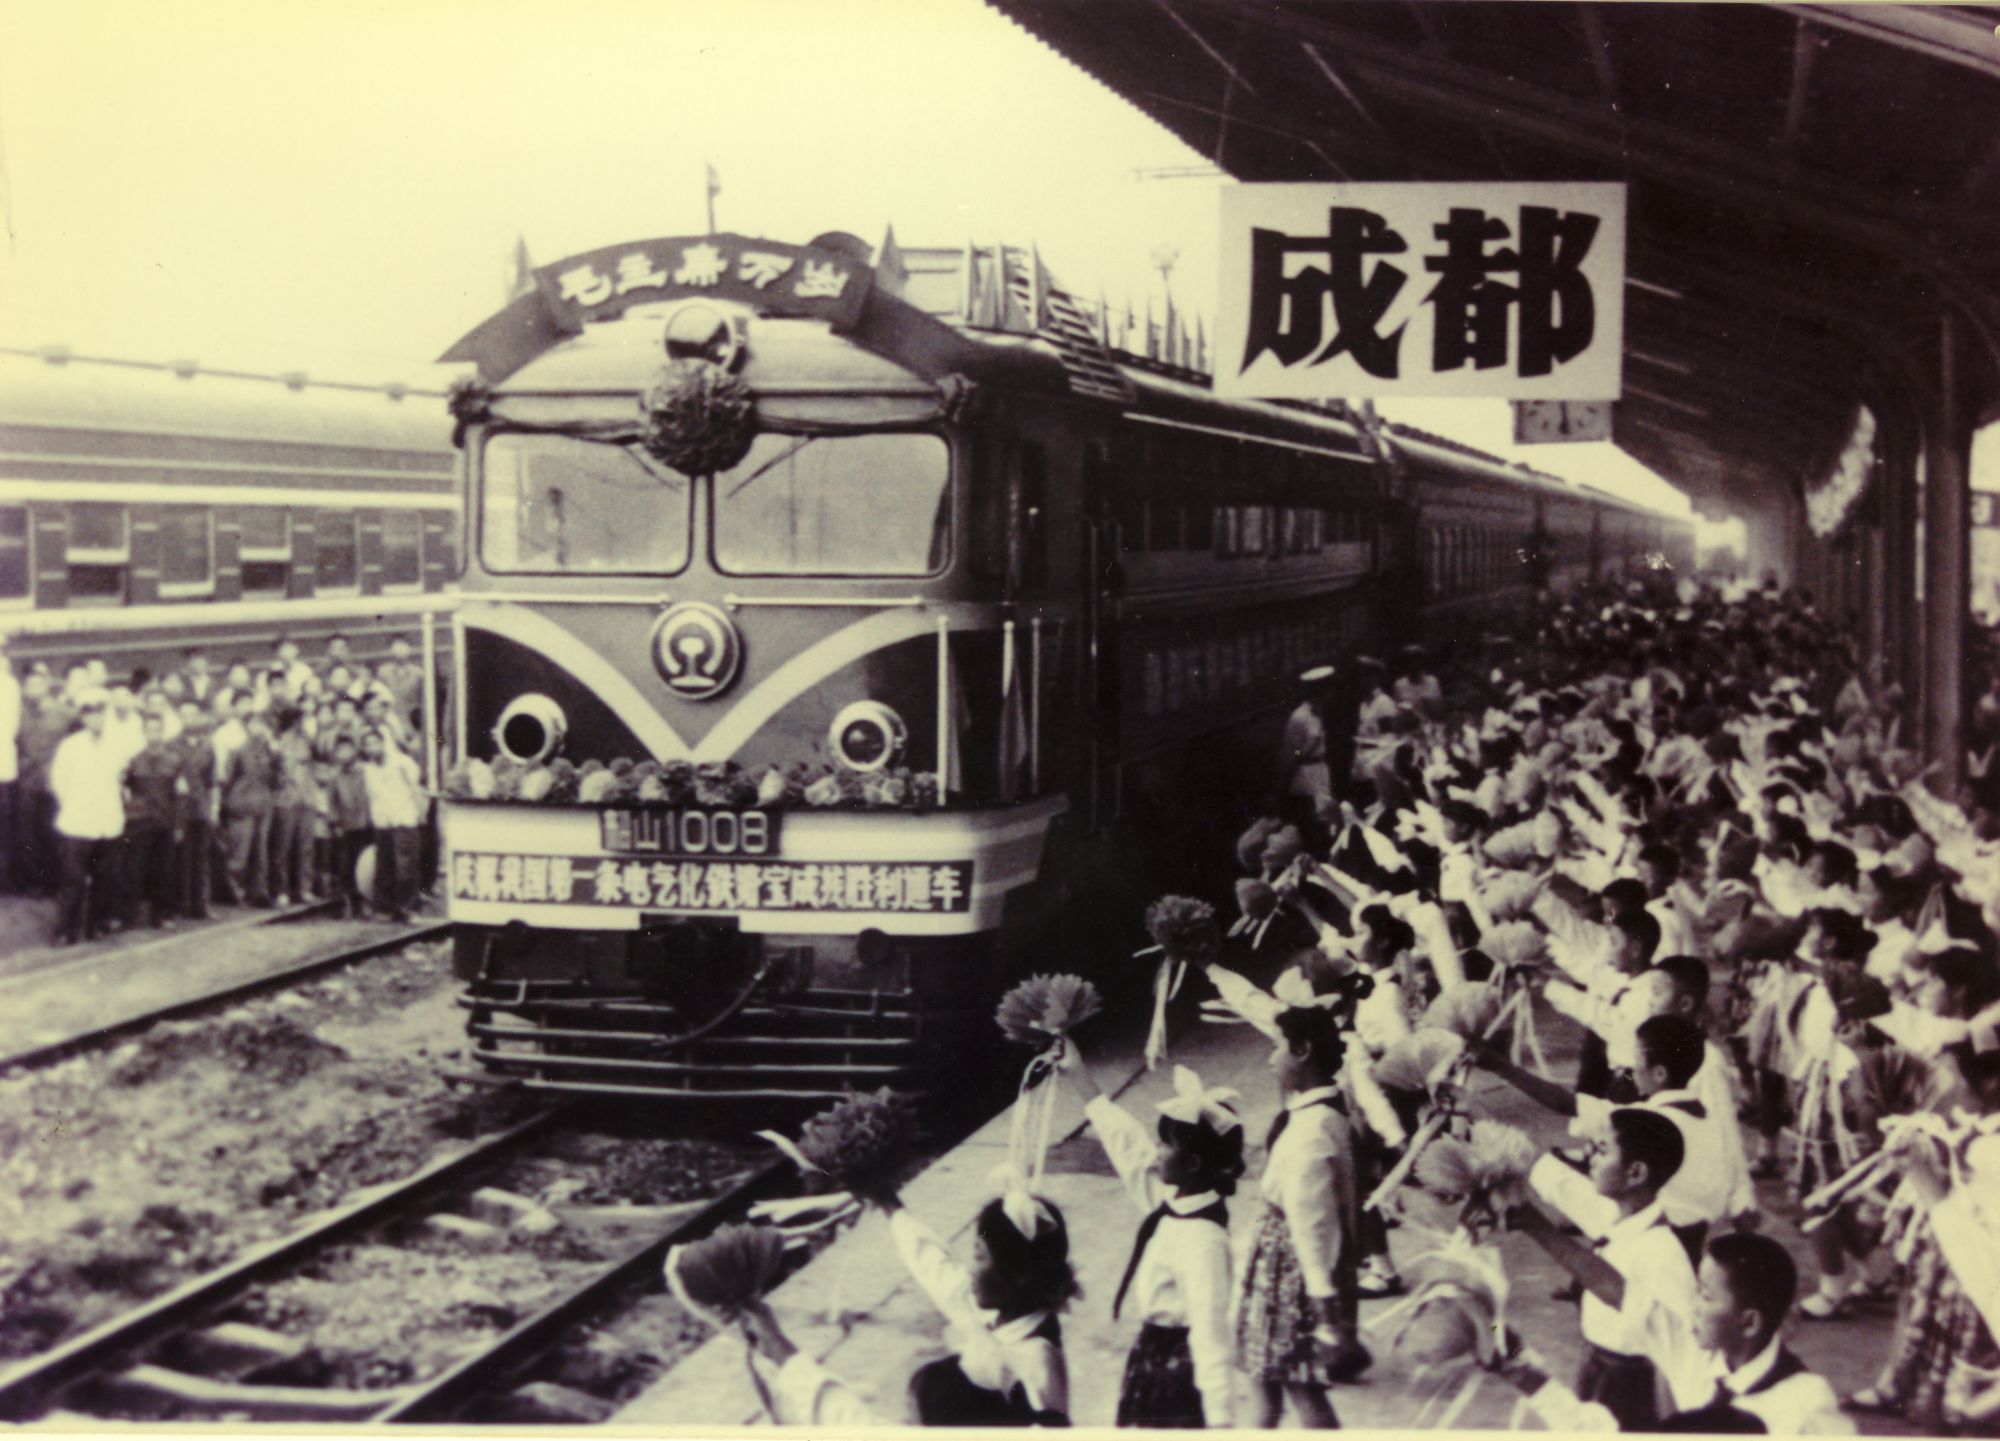 1958年 我国第一条电气化铁路宝成线胜利通车